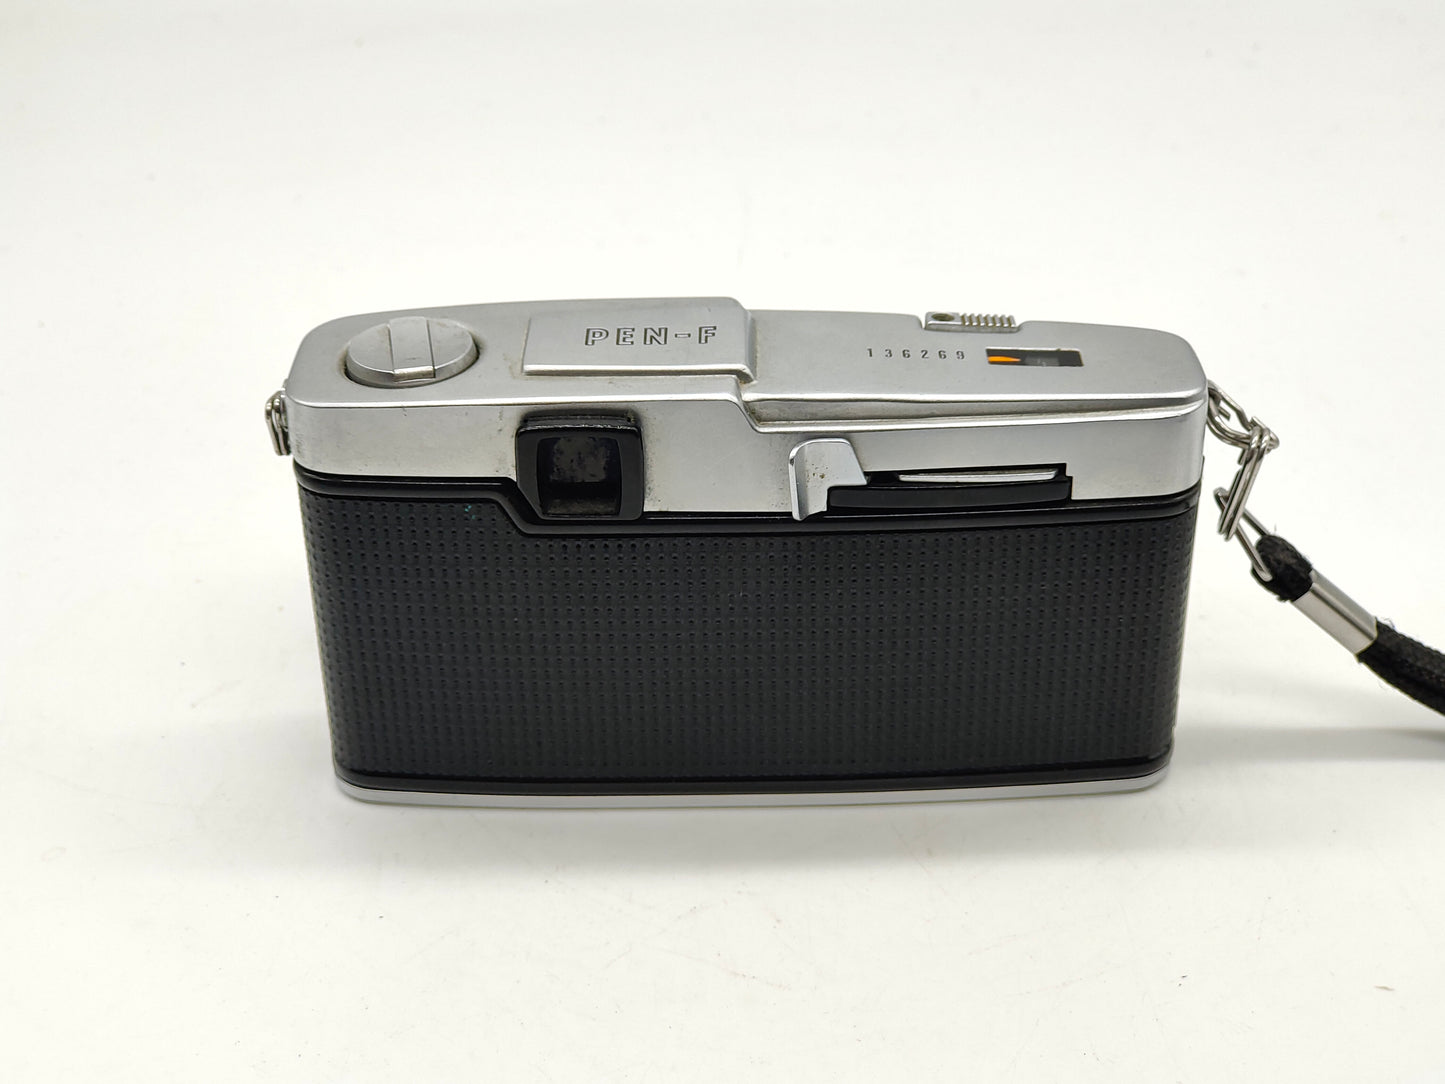 Olympus Pen-F half-frame SLR camera